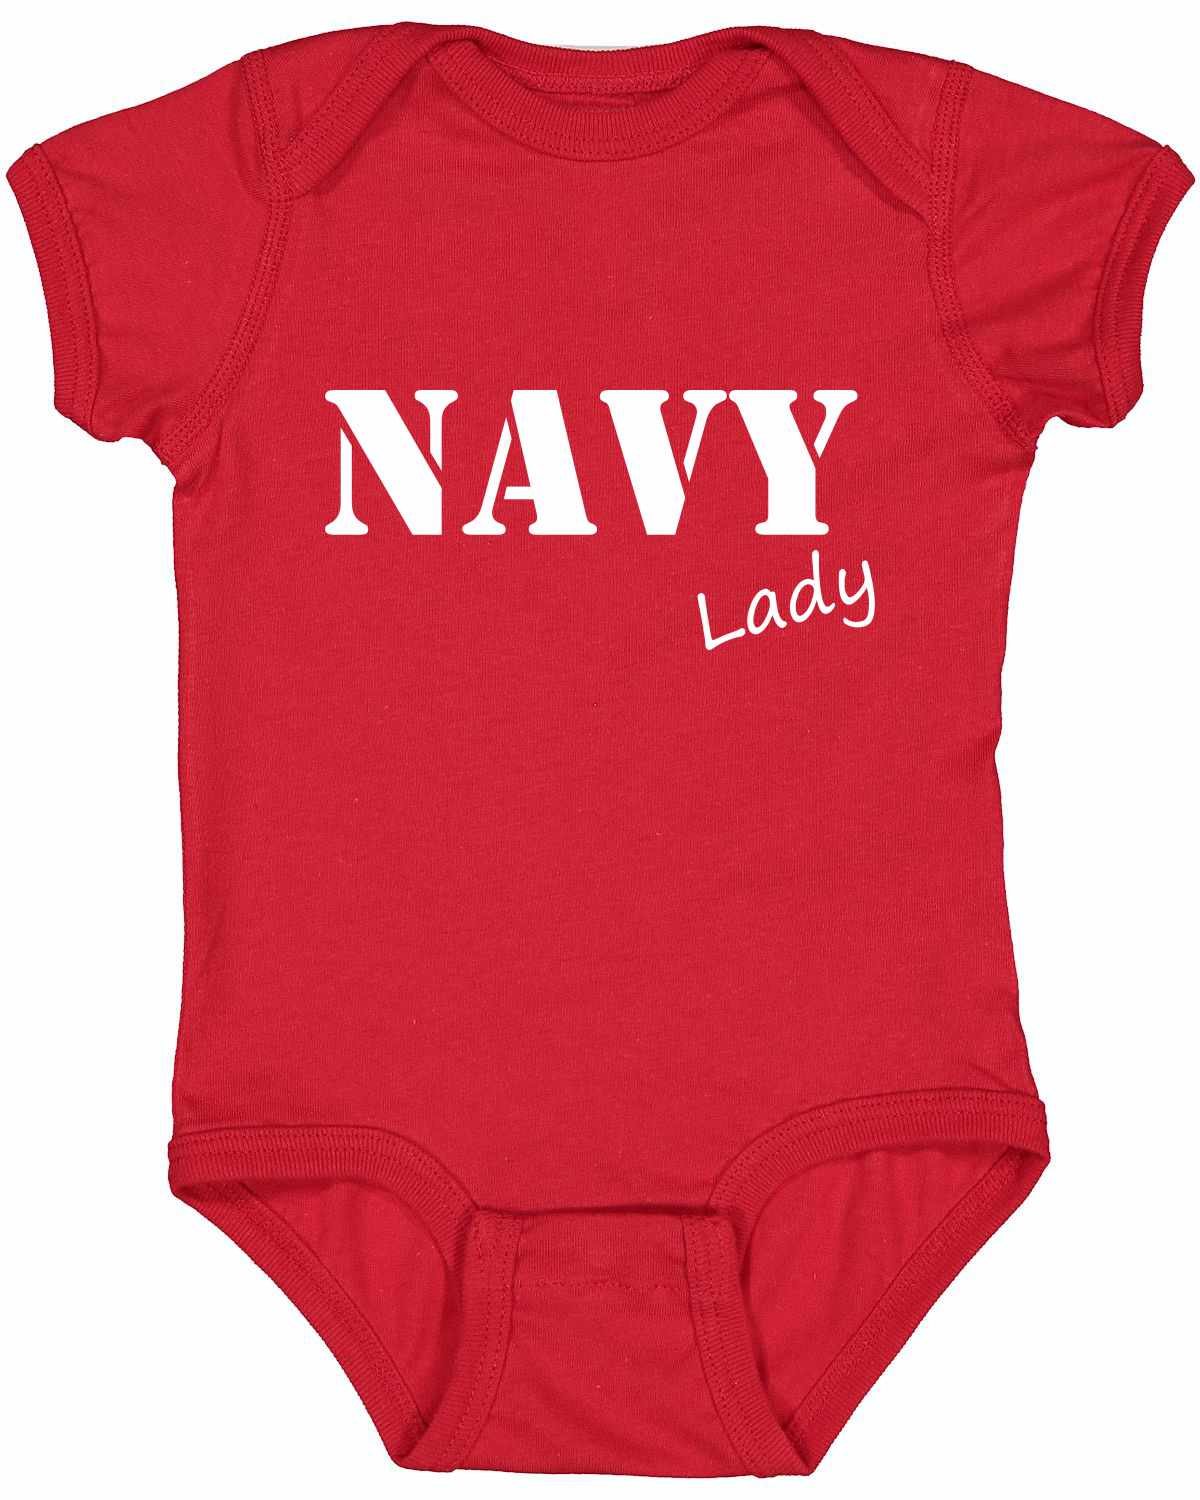 NAVY Lady Infant BodySuit (#1114-10)